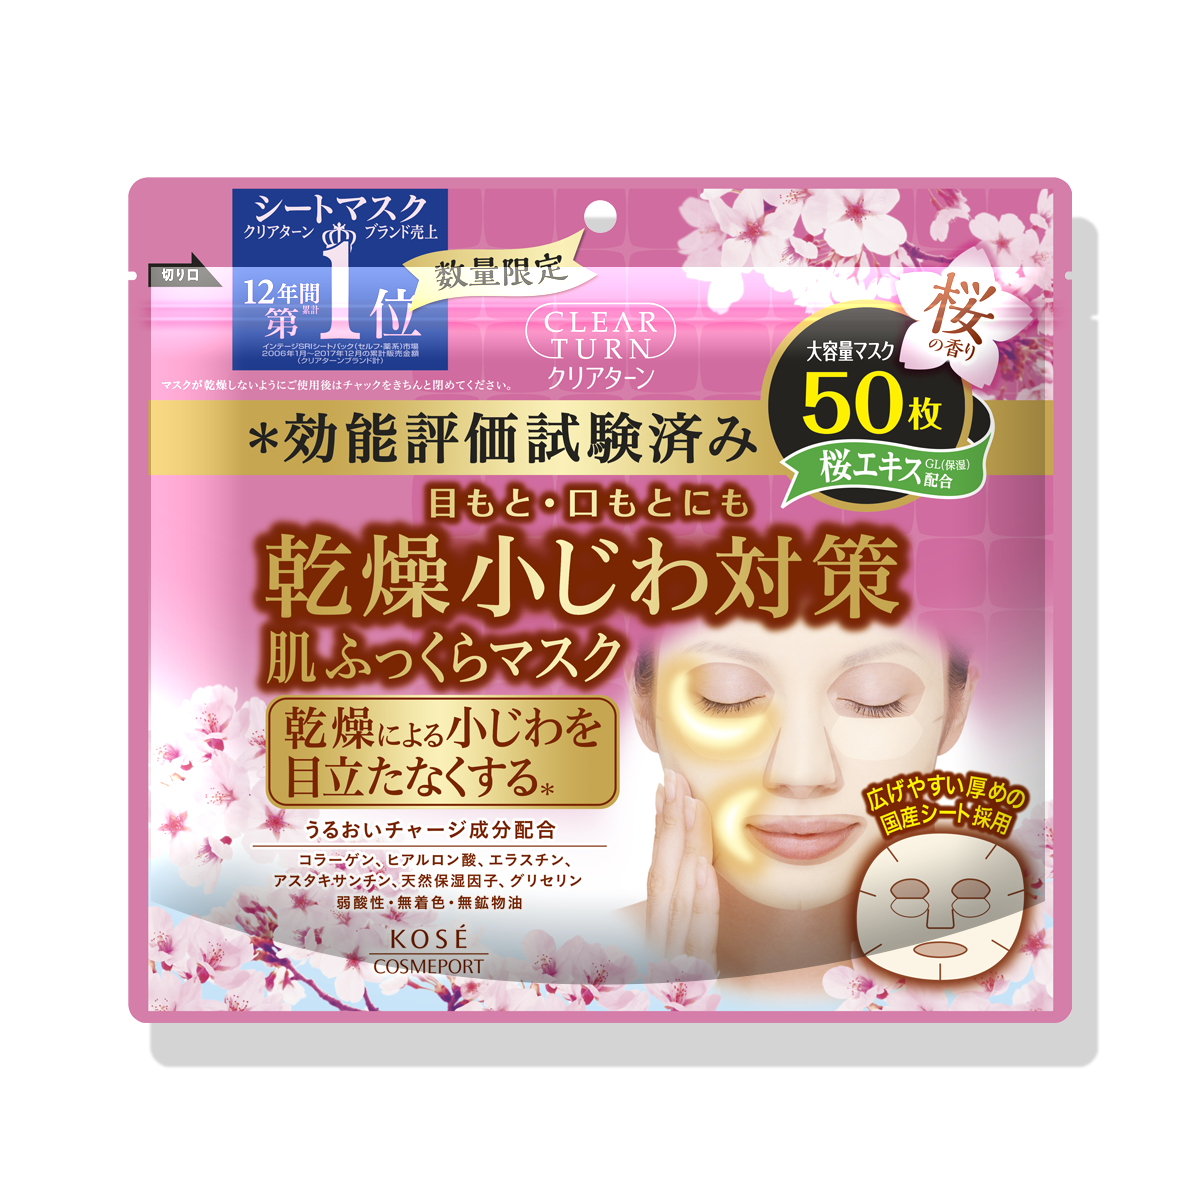 【桜シリーズ】 クリアターン 肌ふっくらマスク 桜の香り